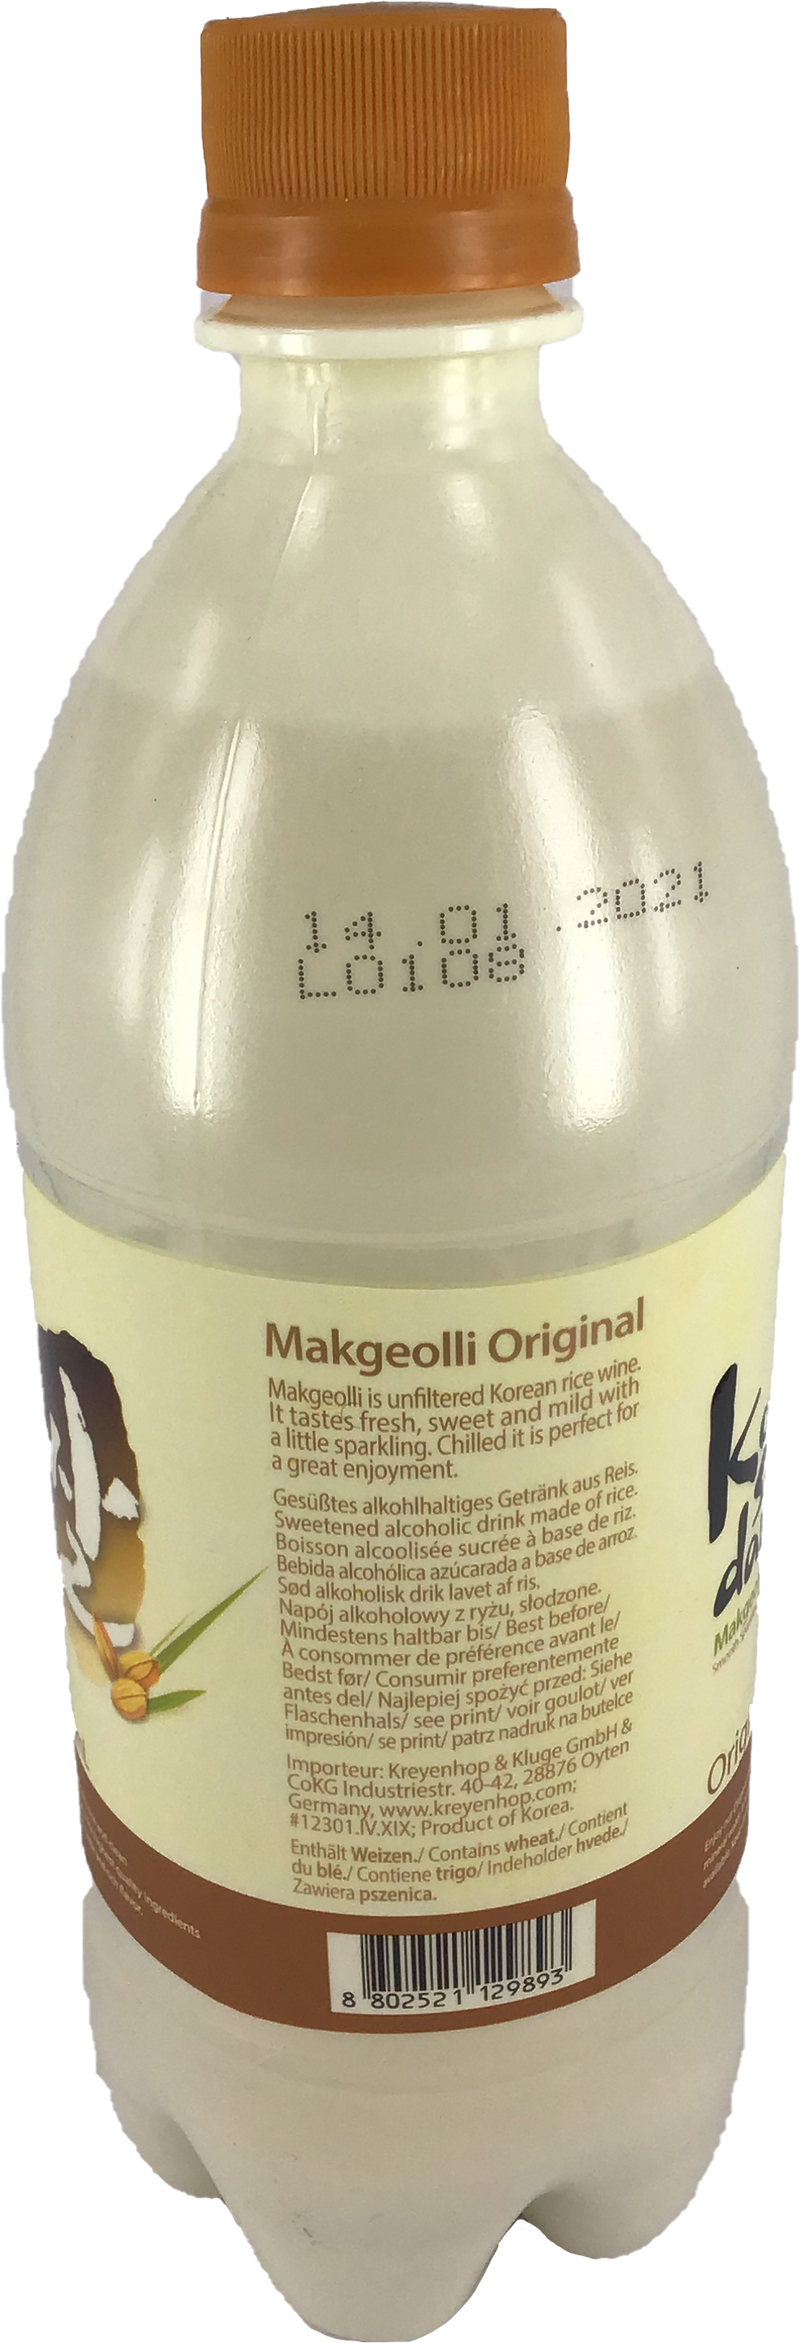 Kuksoondang 韩国米酒 / Makkoli Reiswein 6% Vol. 750ml